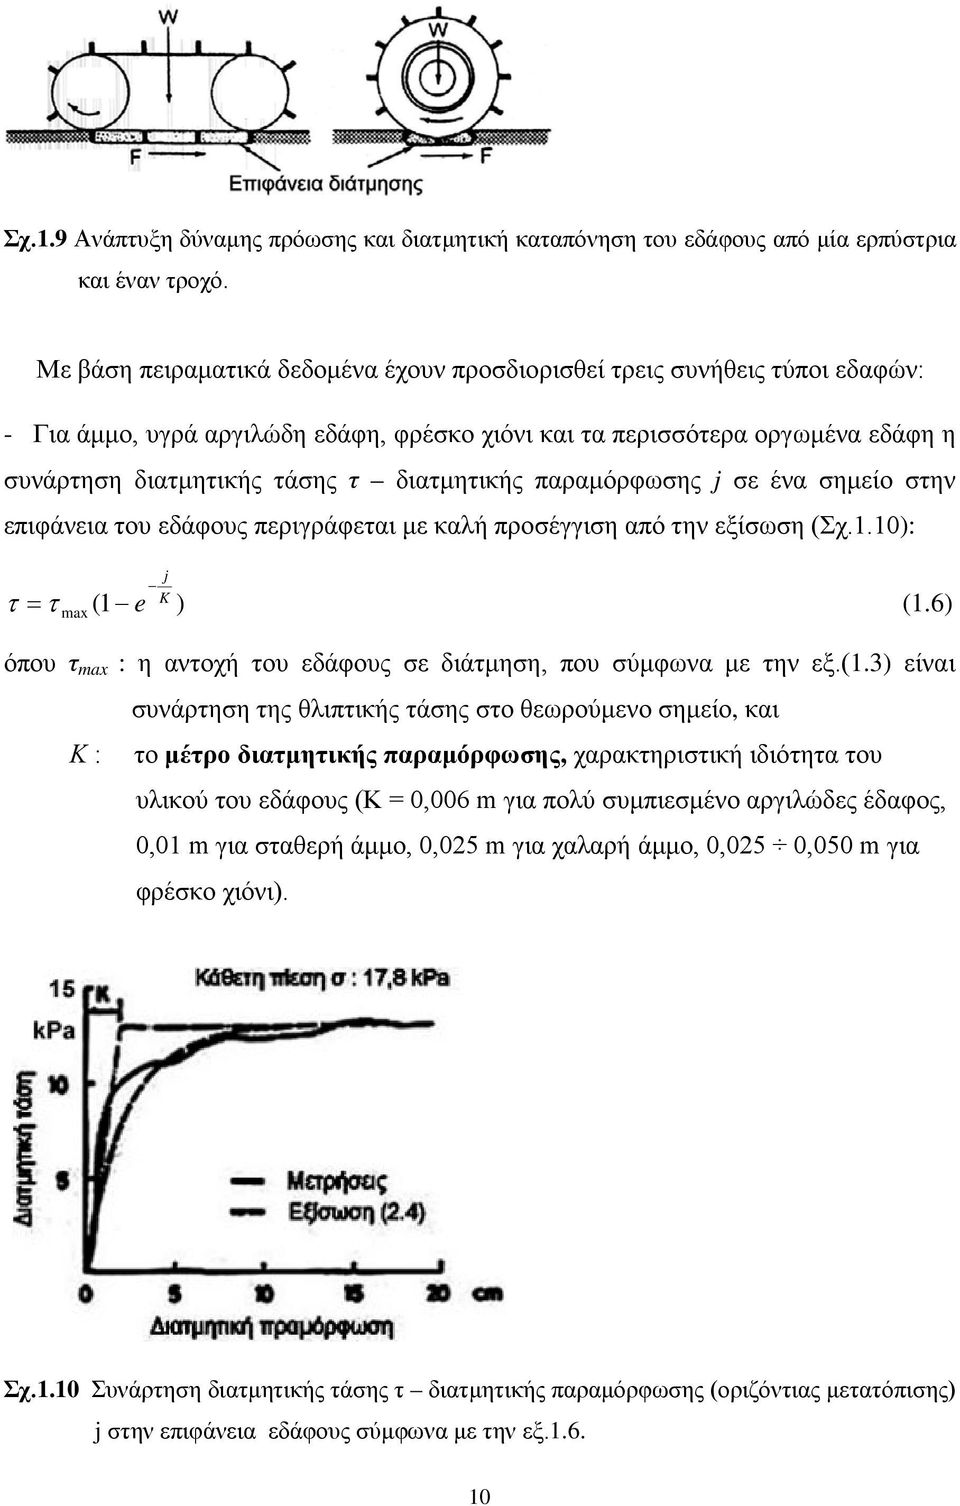 διατμητικής παραμόρφωσης j σε ένα σημείο στην επιφάνεια του εδάφους περιγράφεται με καλή προσέγγιση από την εξίσωση (Σχ.1.10): τ = τ (1 e ) (1.